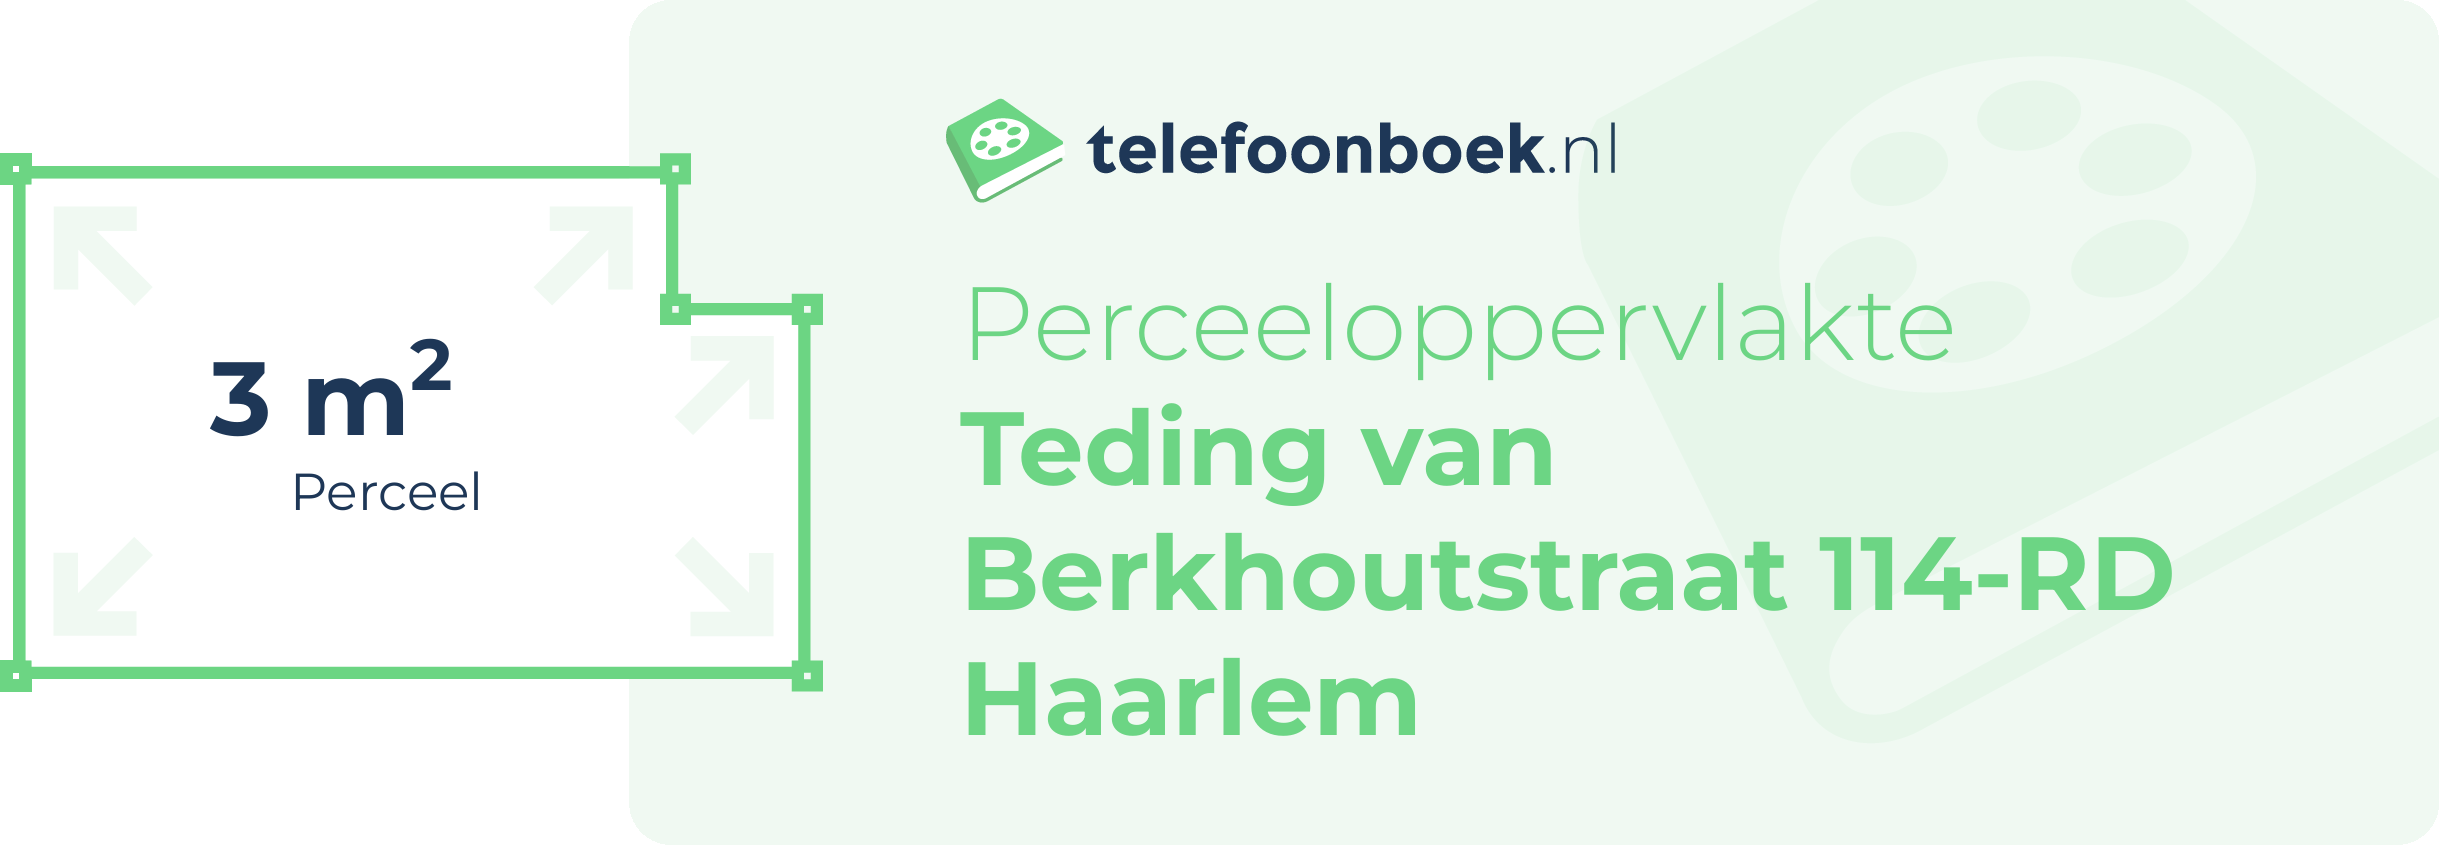 Perceeloppervlakte Teding Van Berkhoutstraat 114-RD Haarlem